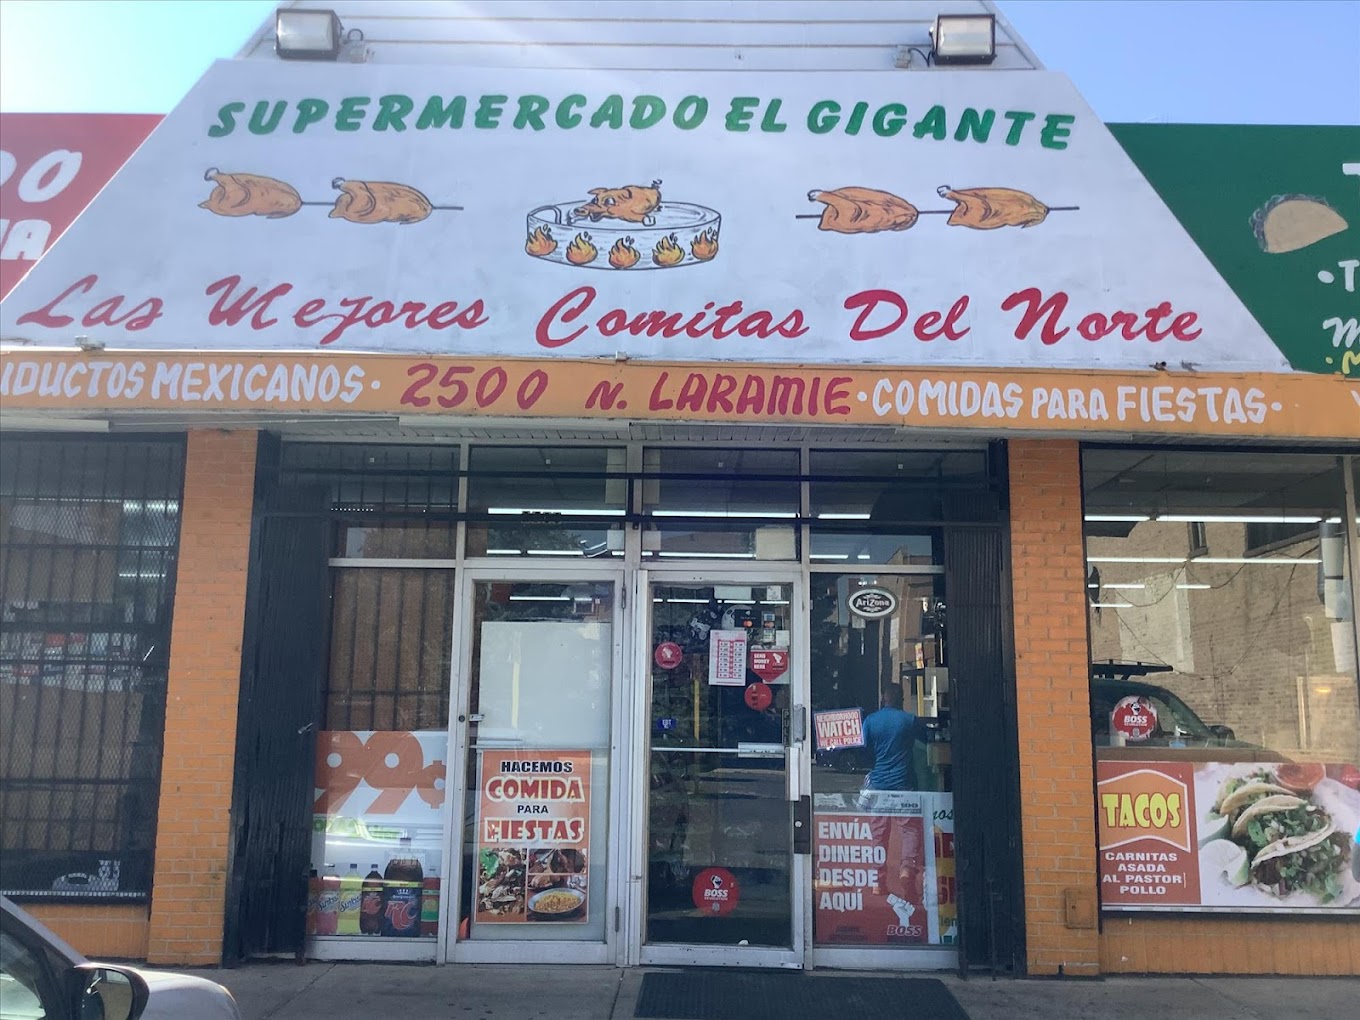 Carnitas Y Supermercado El Gigante A Mexican Grocery Store in Chicago